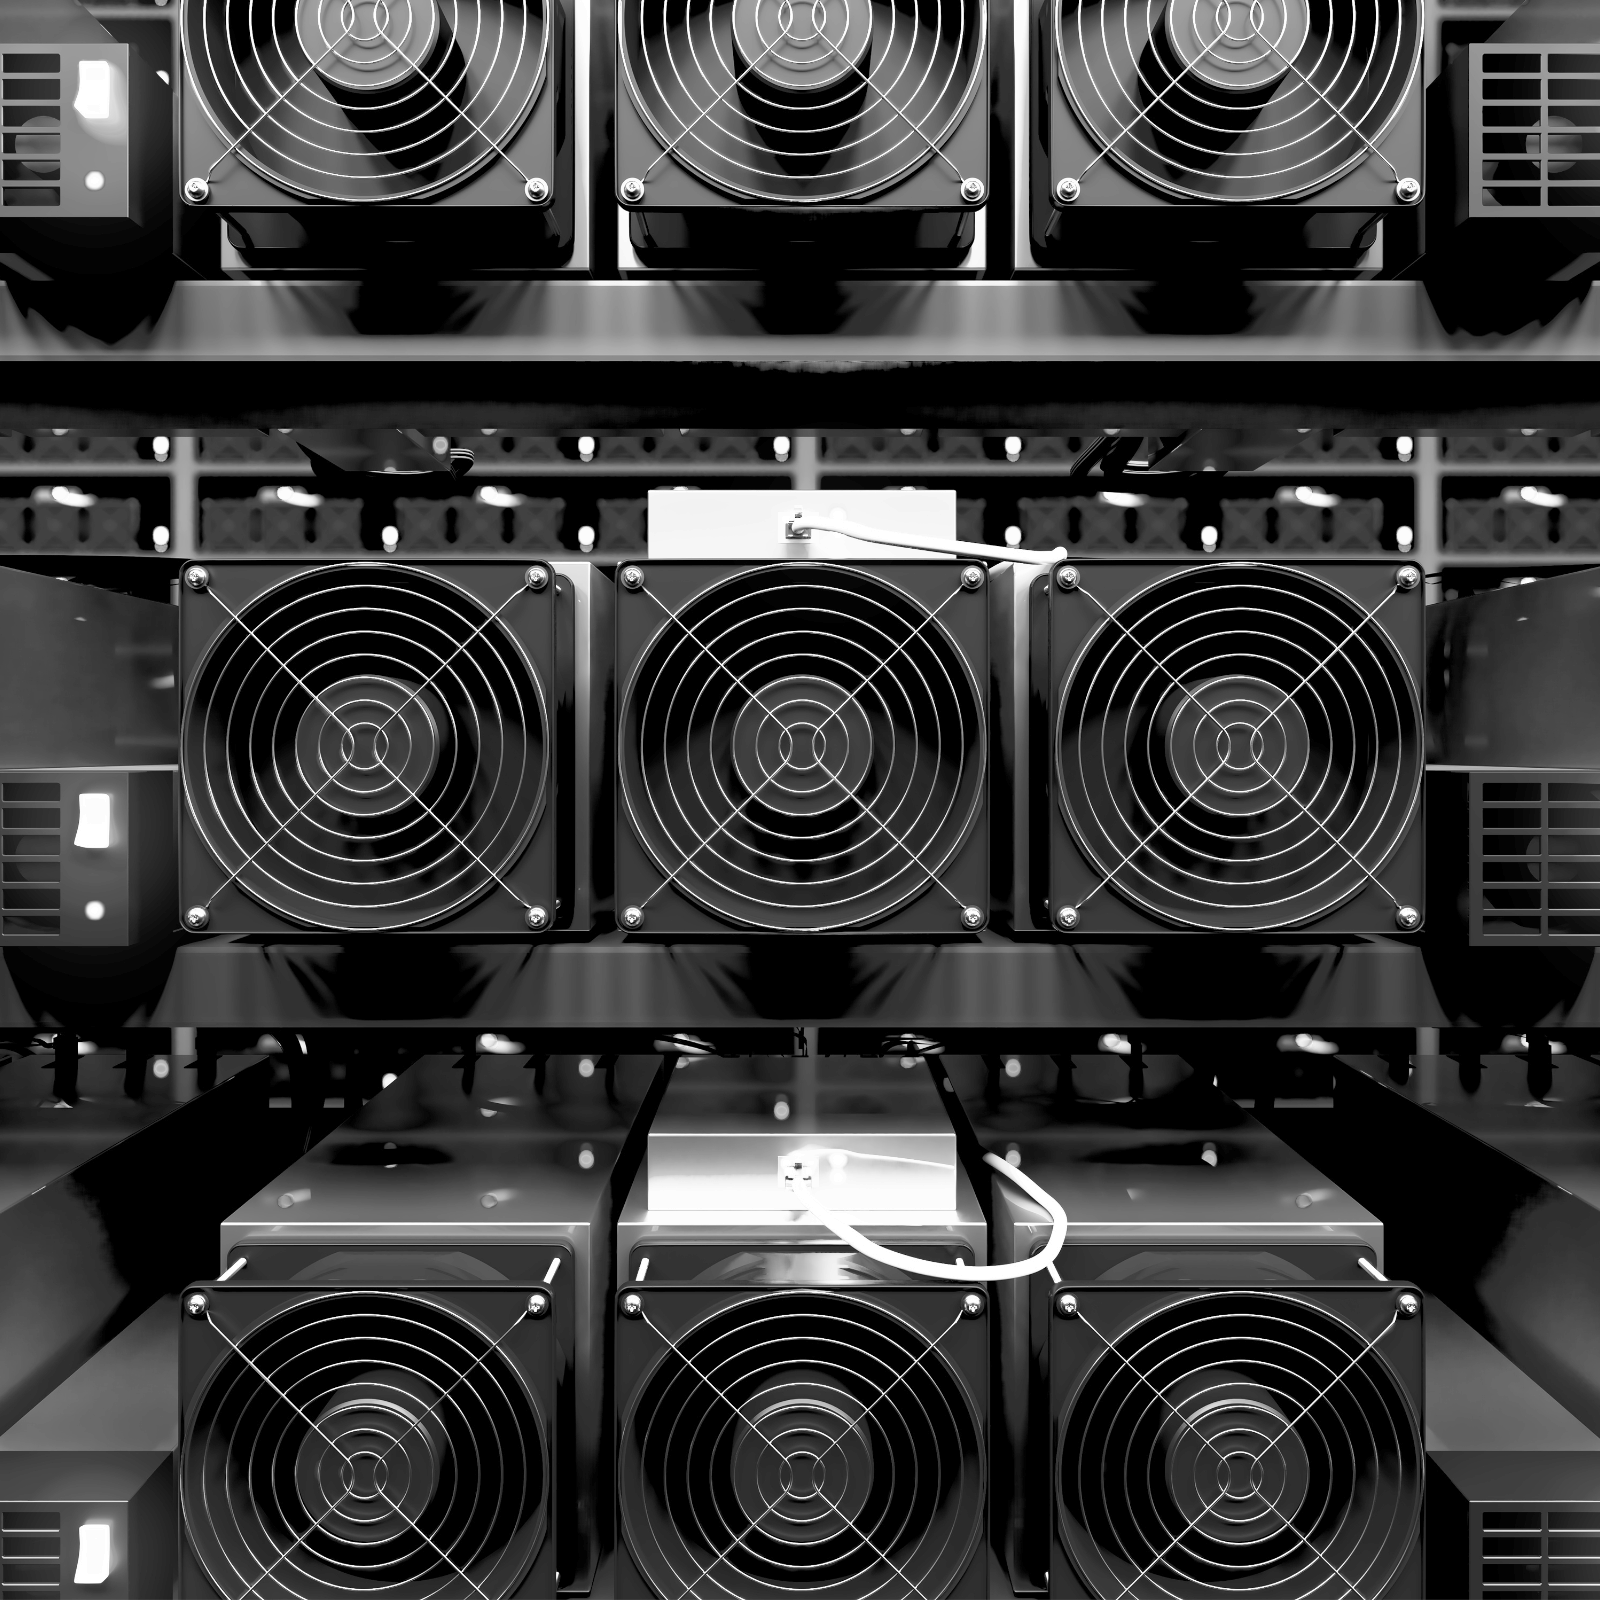 Minatore di produzione bitcoin bitcoin miner antminer S9 14TH/s